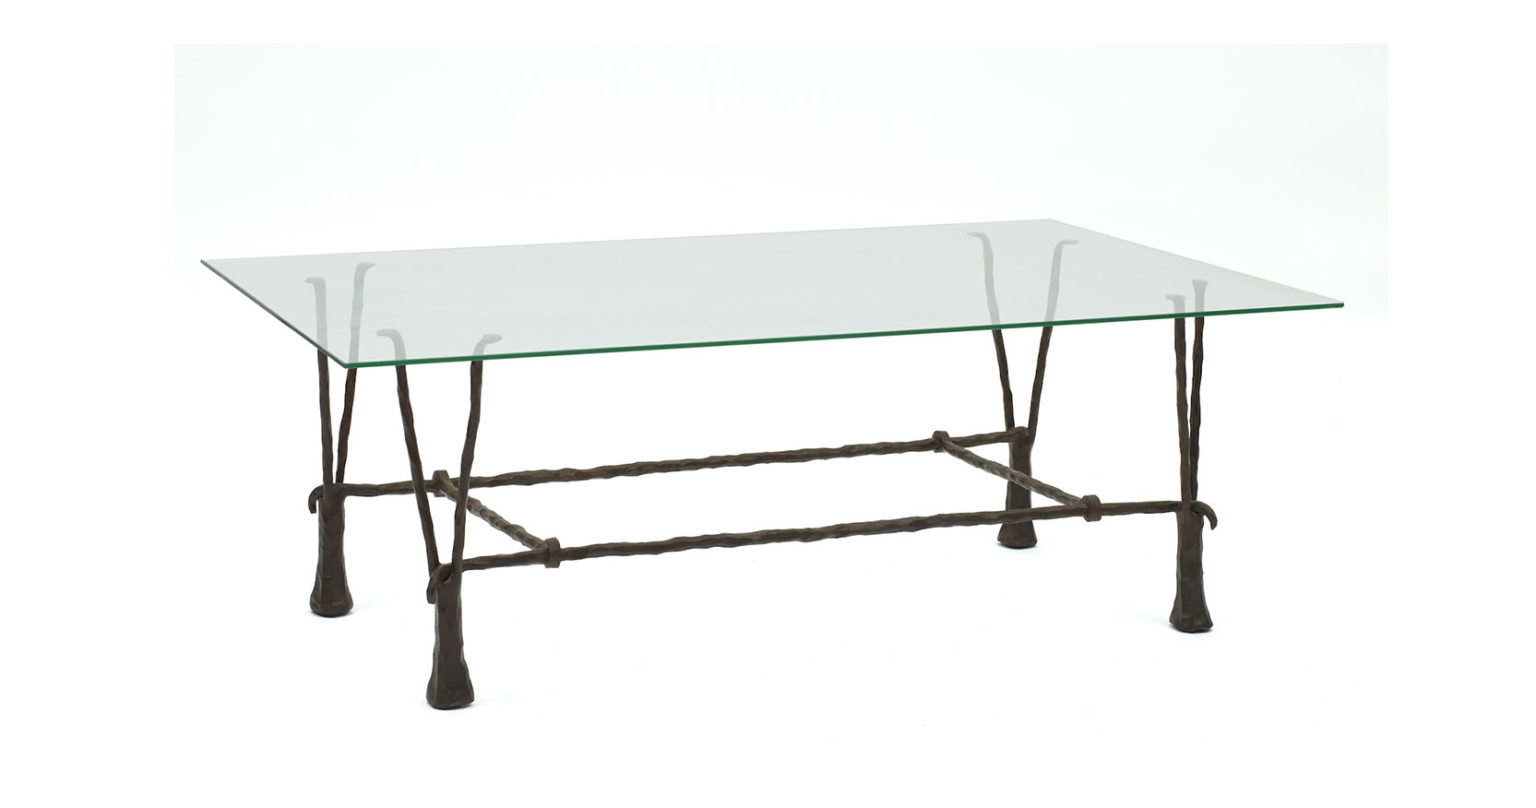 Garouste Bonetti, table basse minimaliste rectangulaire, plateau en verre , pieds en fer forgé noir qui se divisent en deux fourches situées sous le plateau